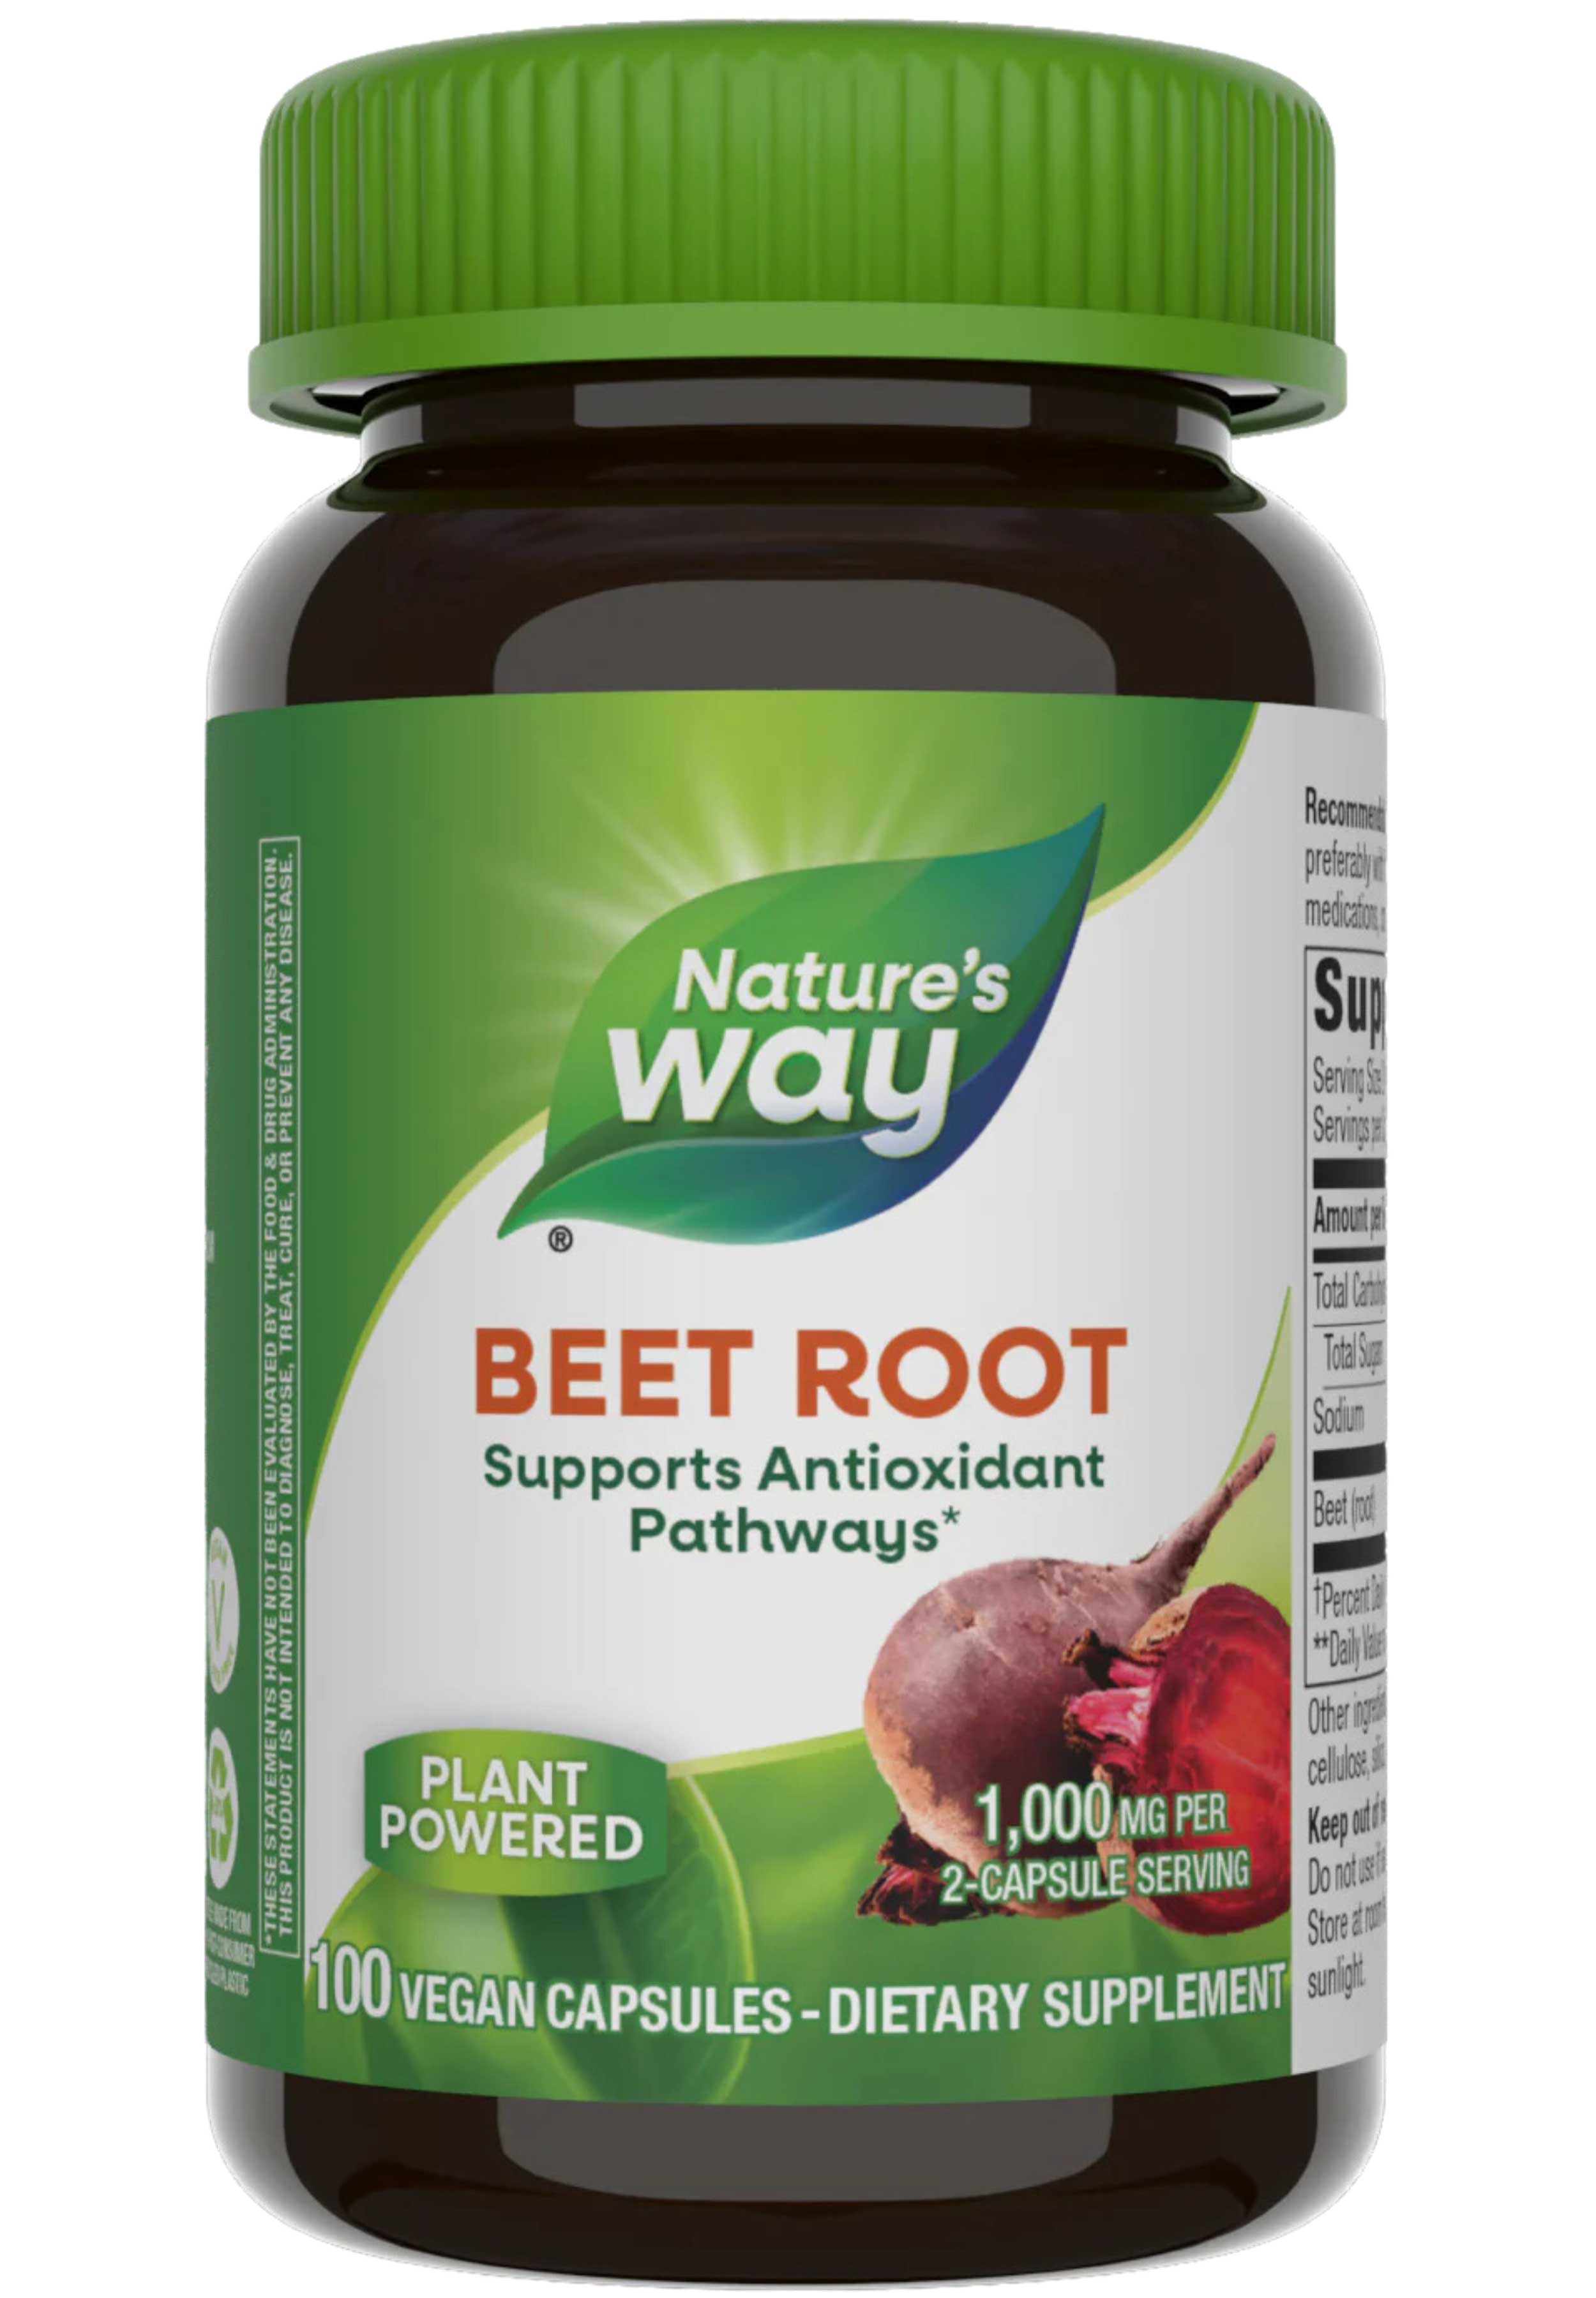 Nature's Way Beet Root